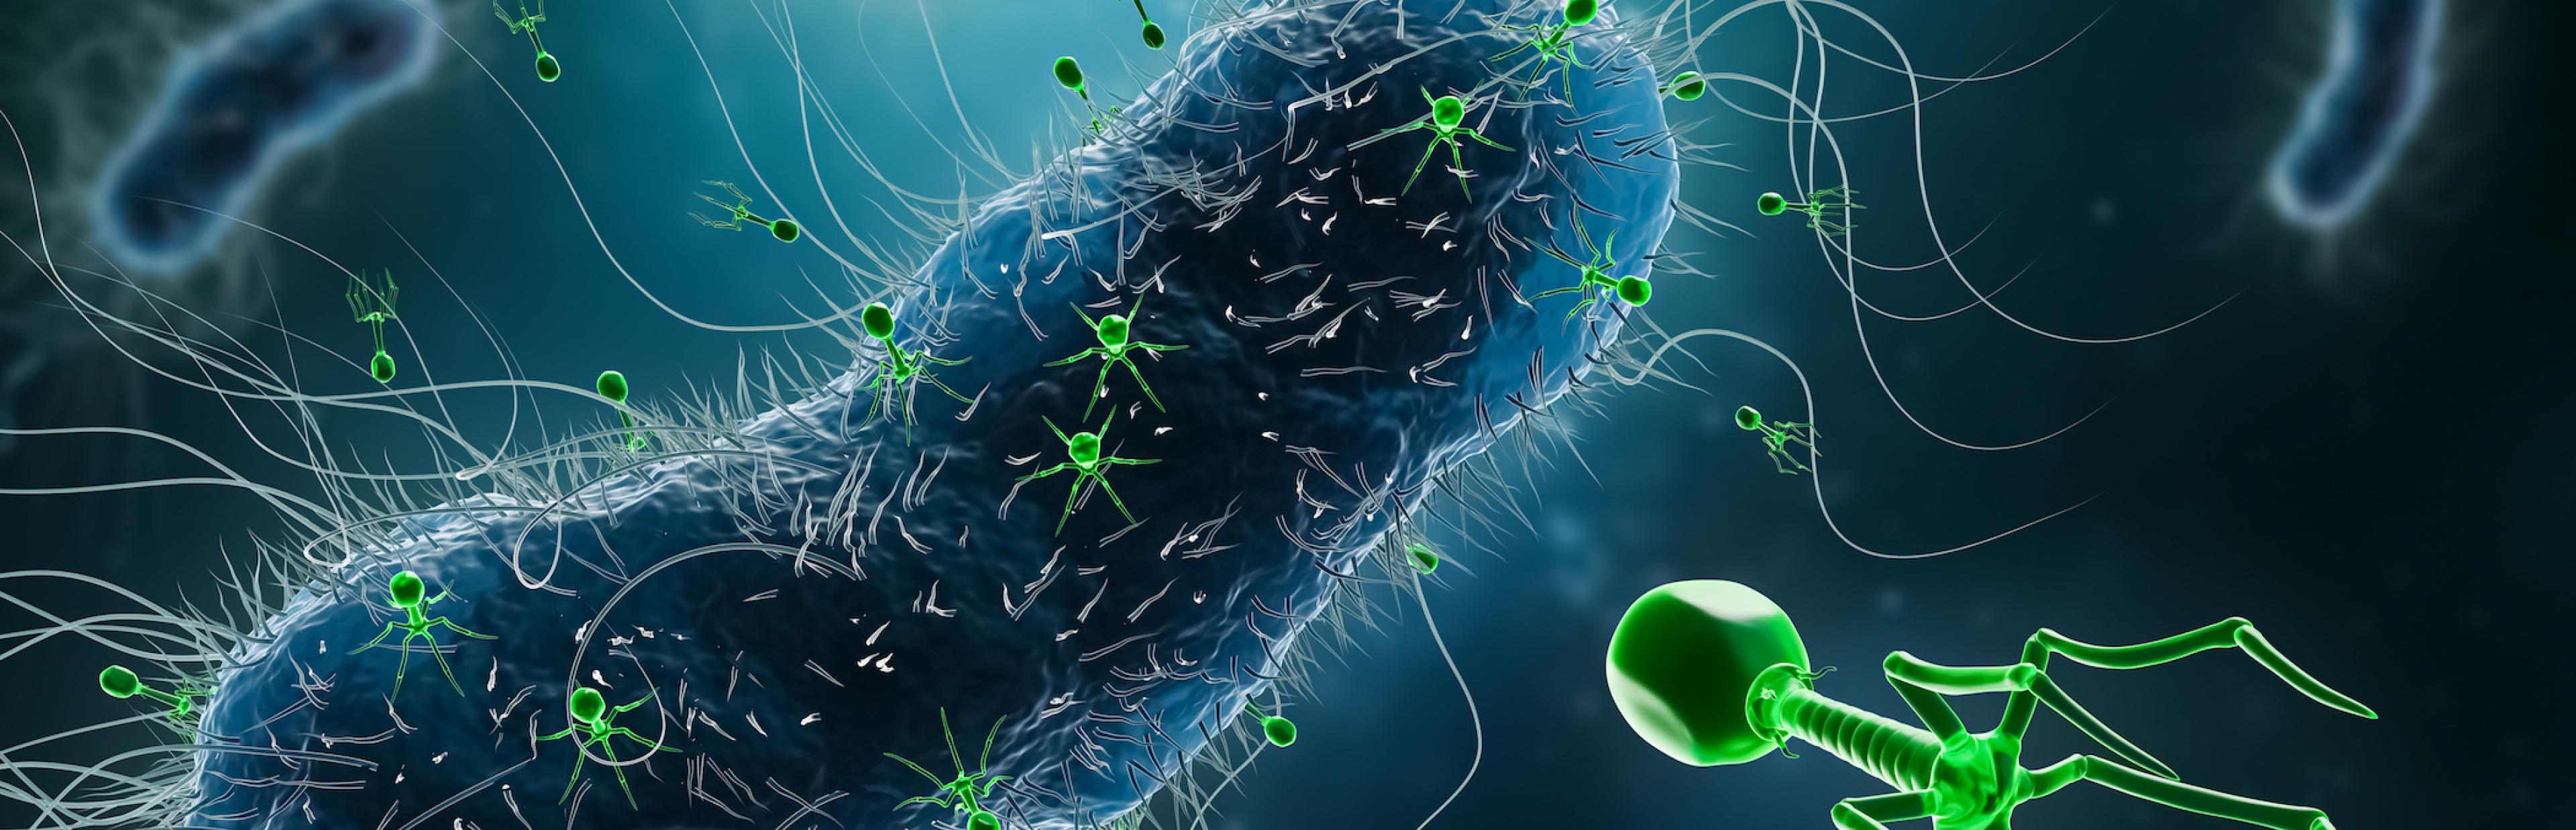 Die Illustration zeigt mehrere Bakterien, dargestellt als ovale blaue Gebilde. Mehrere Phagen – dargestellt in grün als Gebilde aus einem Kopf, einer Art Wirbelsäule und sechs Beinen – steuern Kopf voran auf das Bakterium im Vordergrund zu oder sitzen auf seiner Oberfläche.